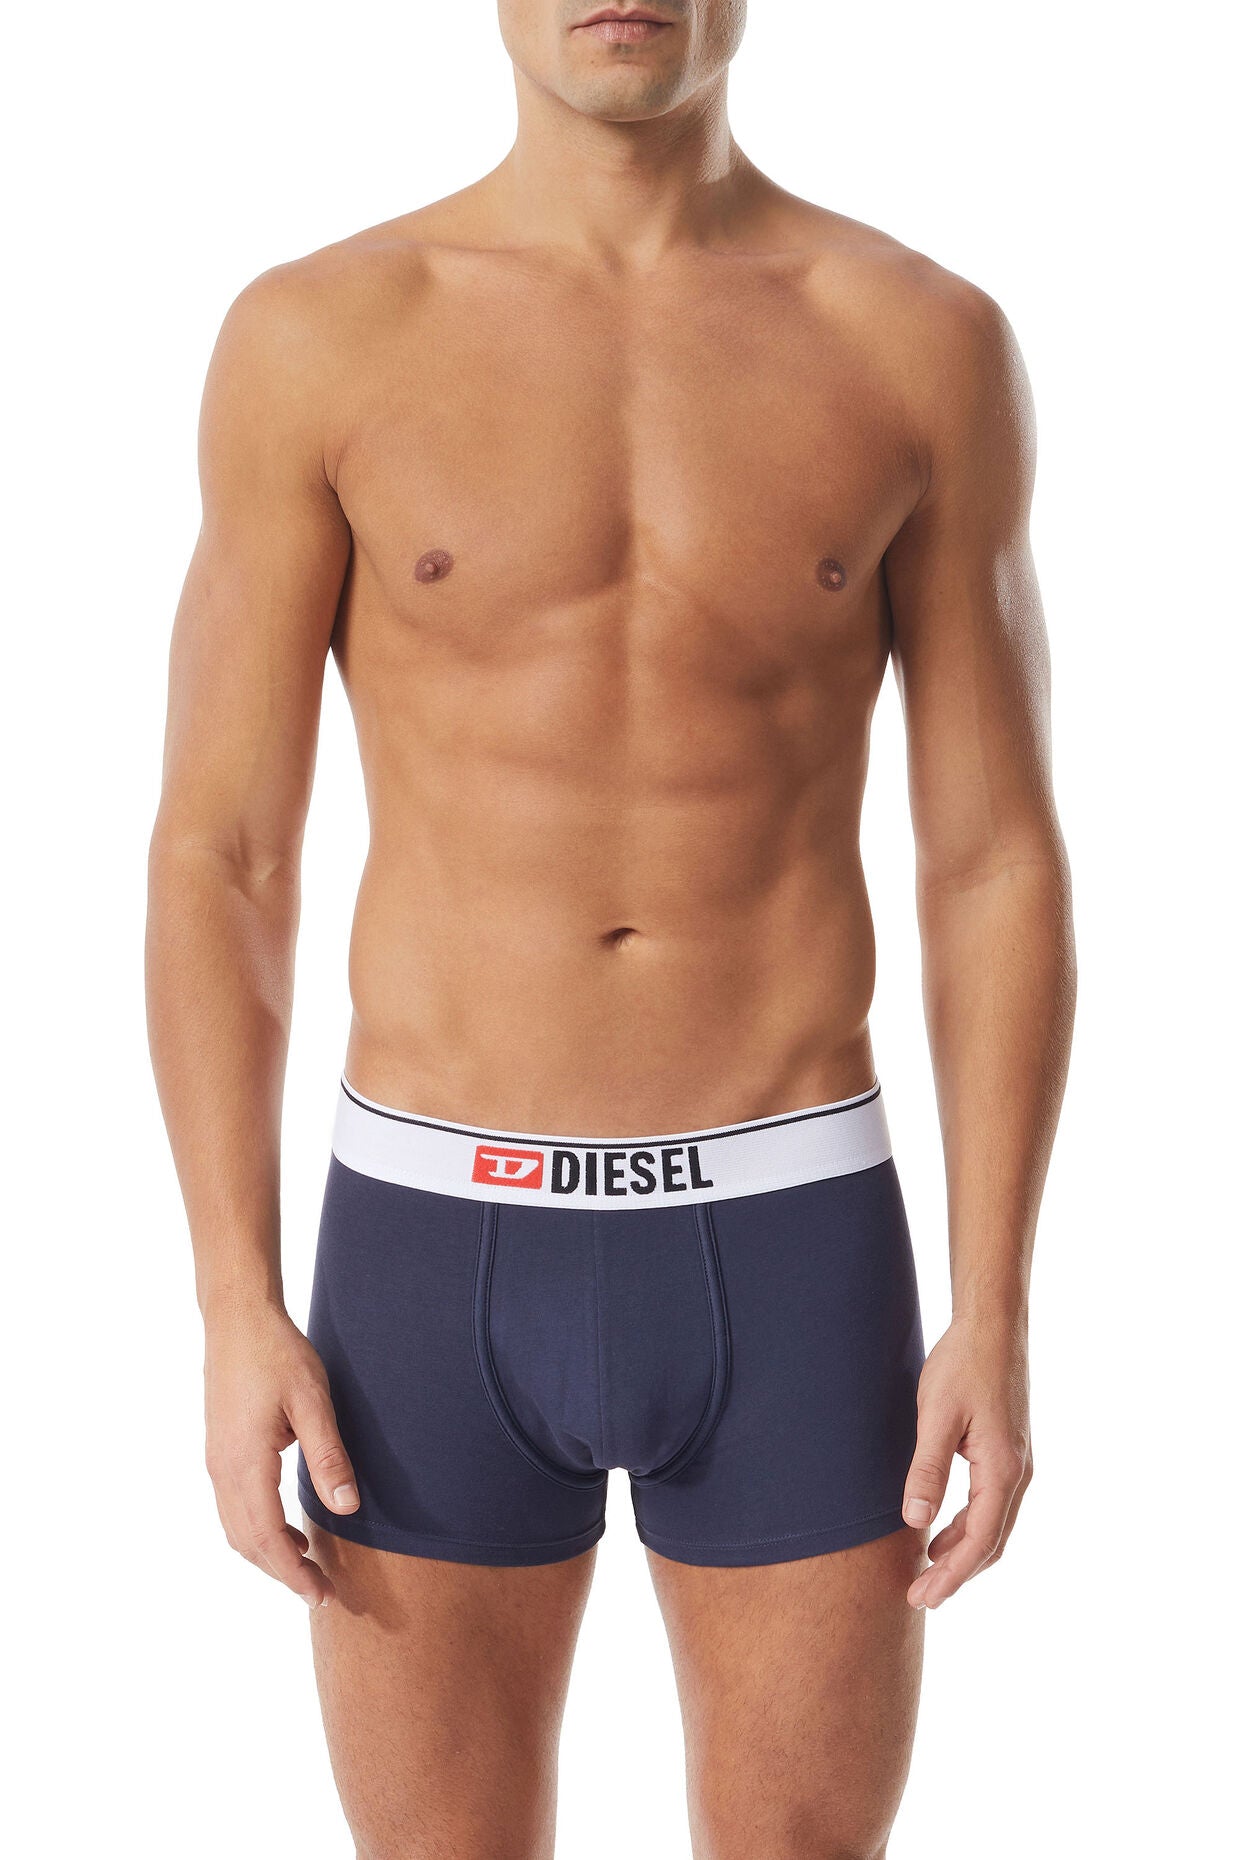 Diesel - Damien Boxer Shorts - Navy